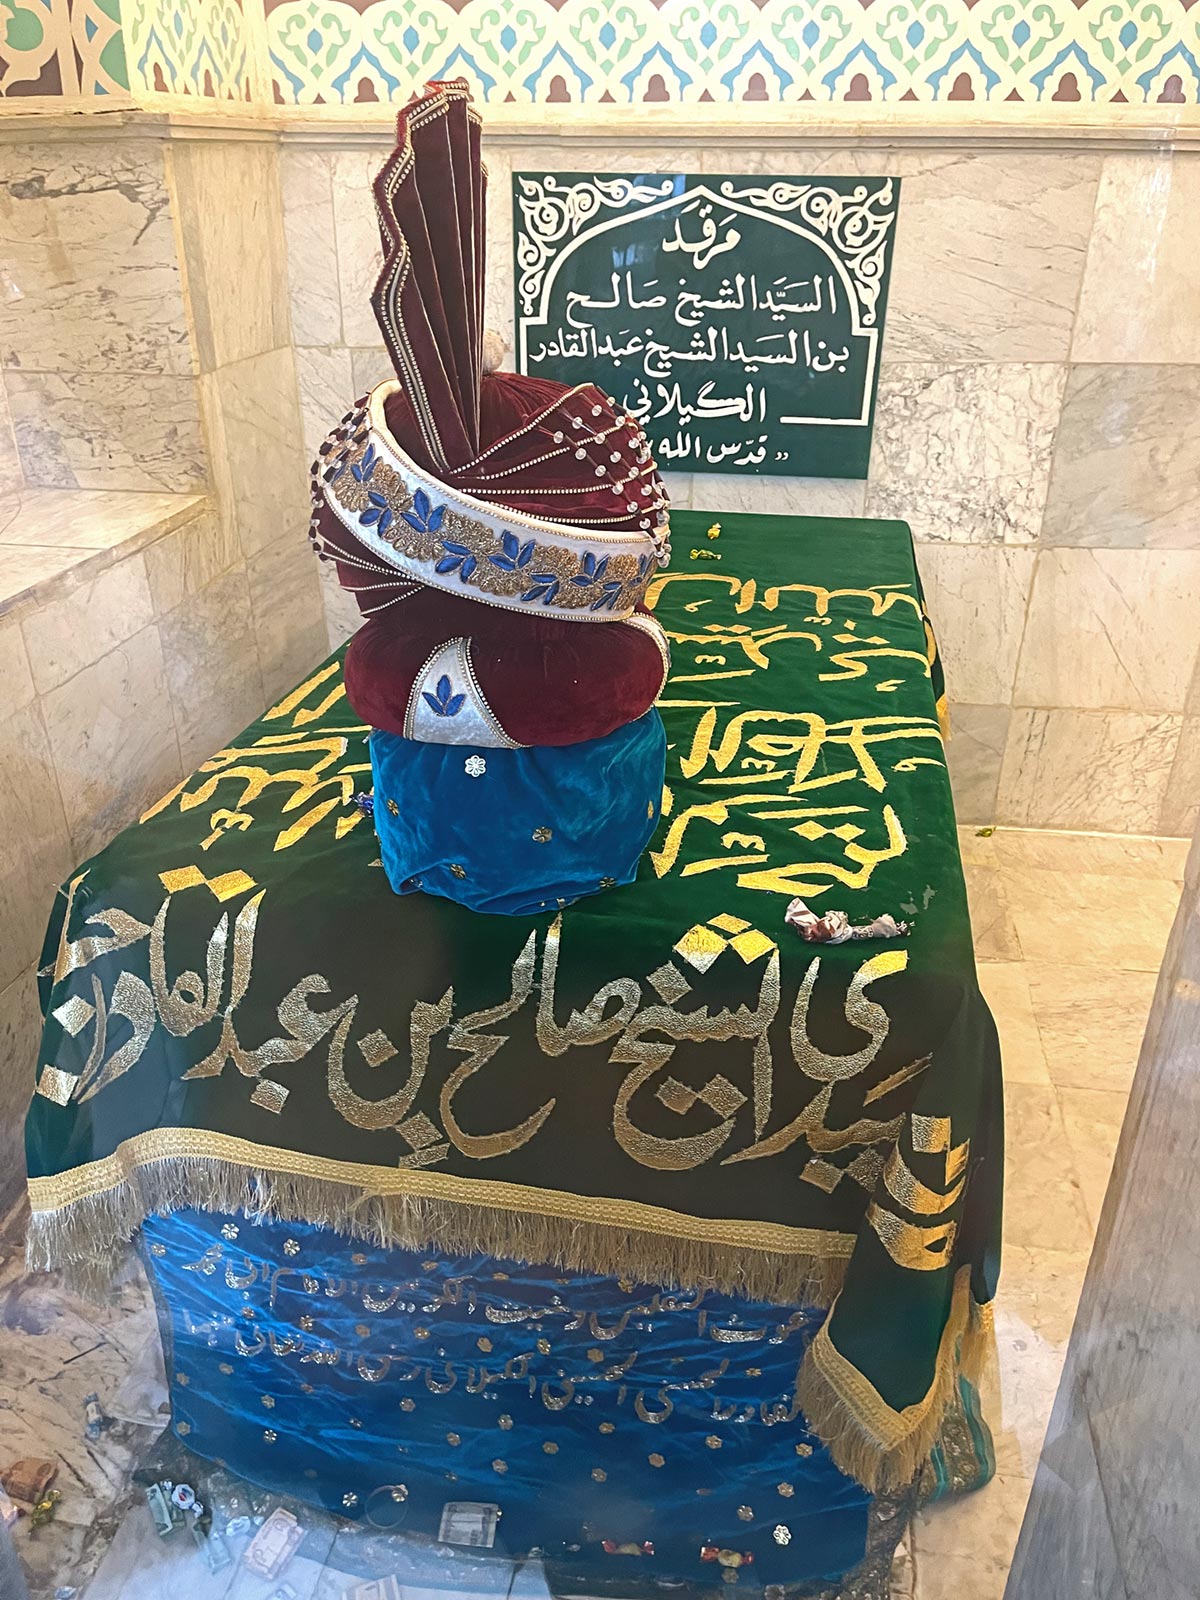 अब्दुल कादिर गिलानी, बगदाद के मकबरे पर अब्दुल कादिर गिलानी के पुत्र शेख सलीह का मकबरा